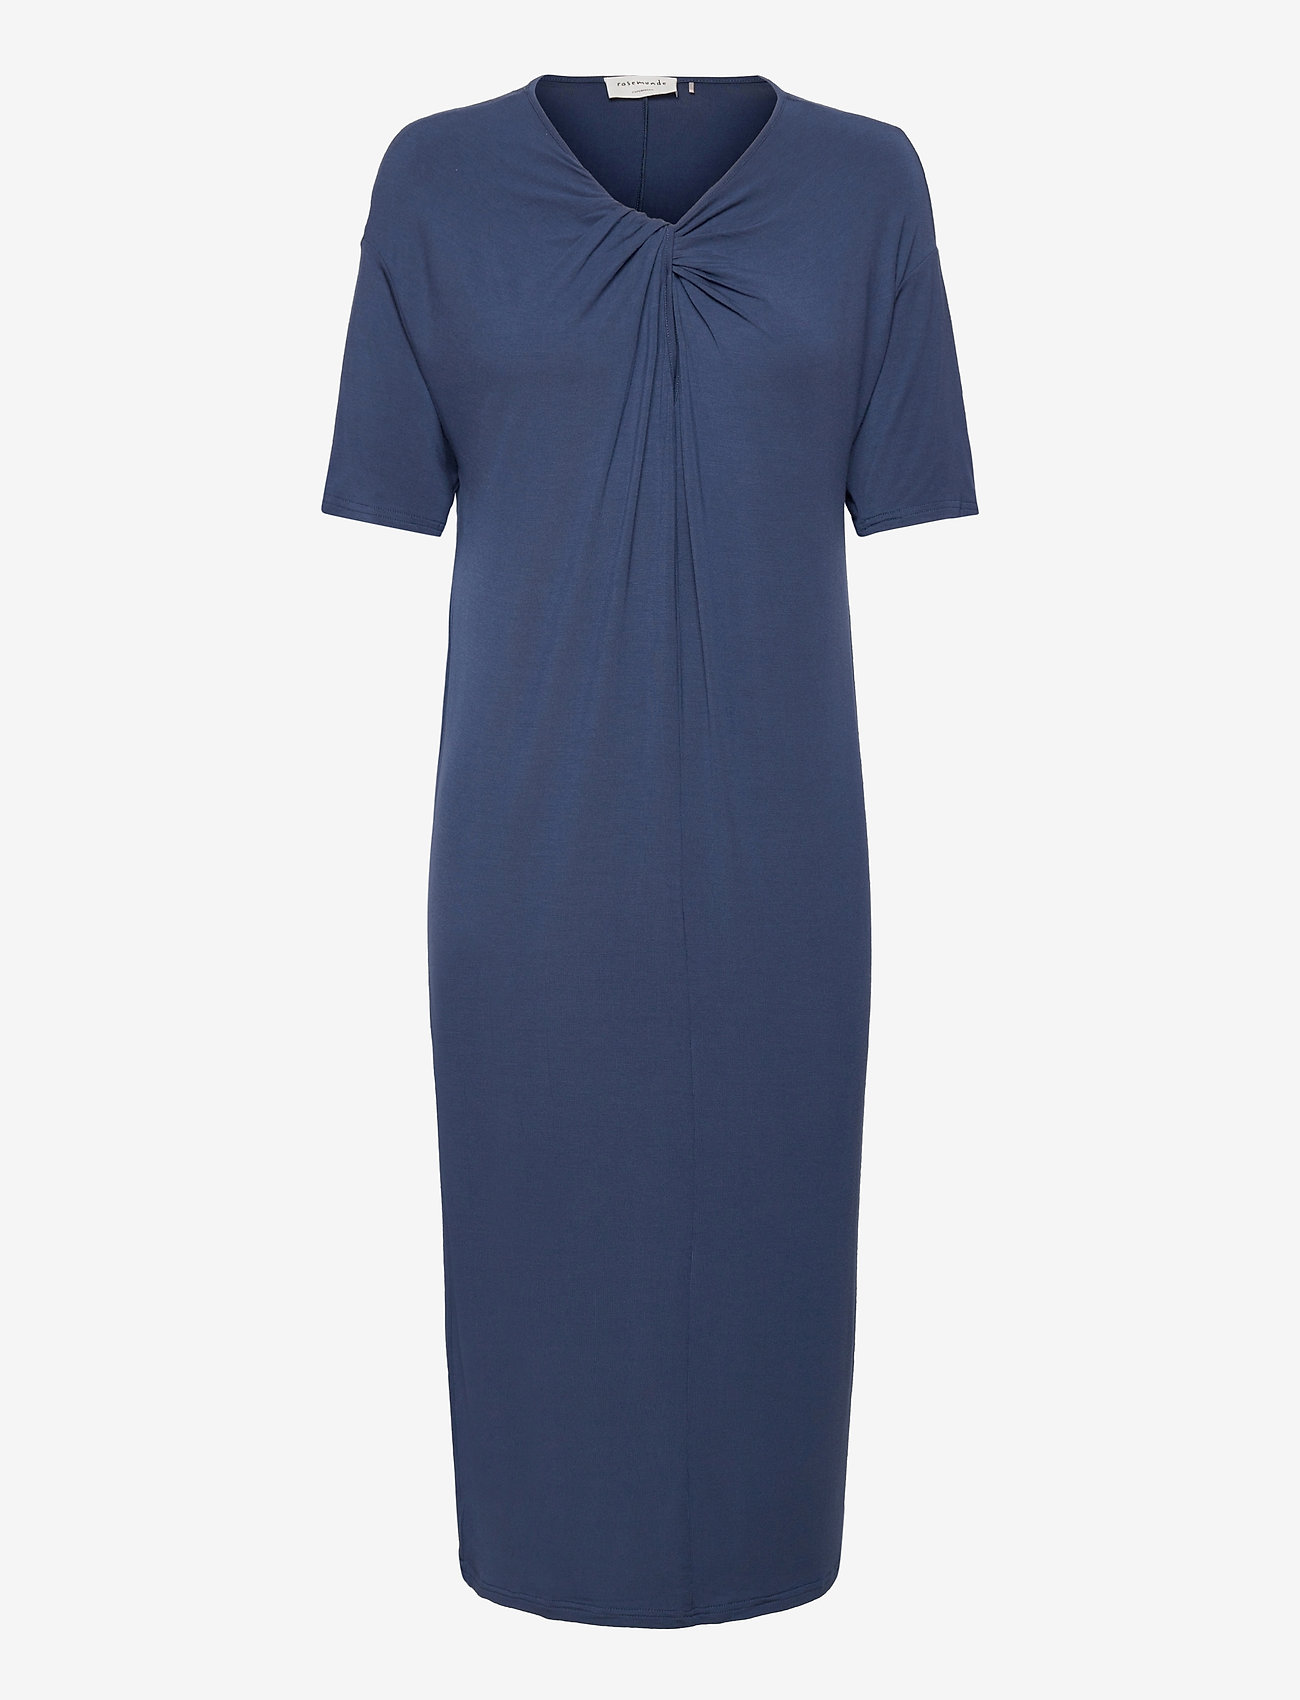 Rosemunde - Dress ss - t-skjortekjoler - denim blue - 0